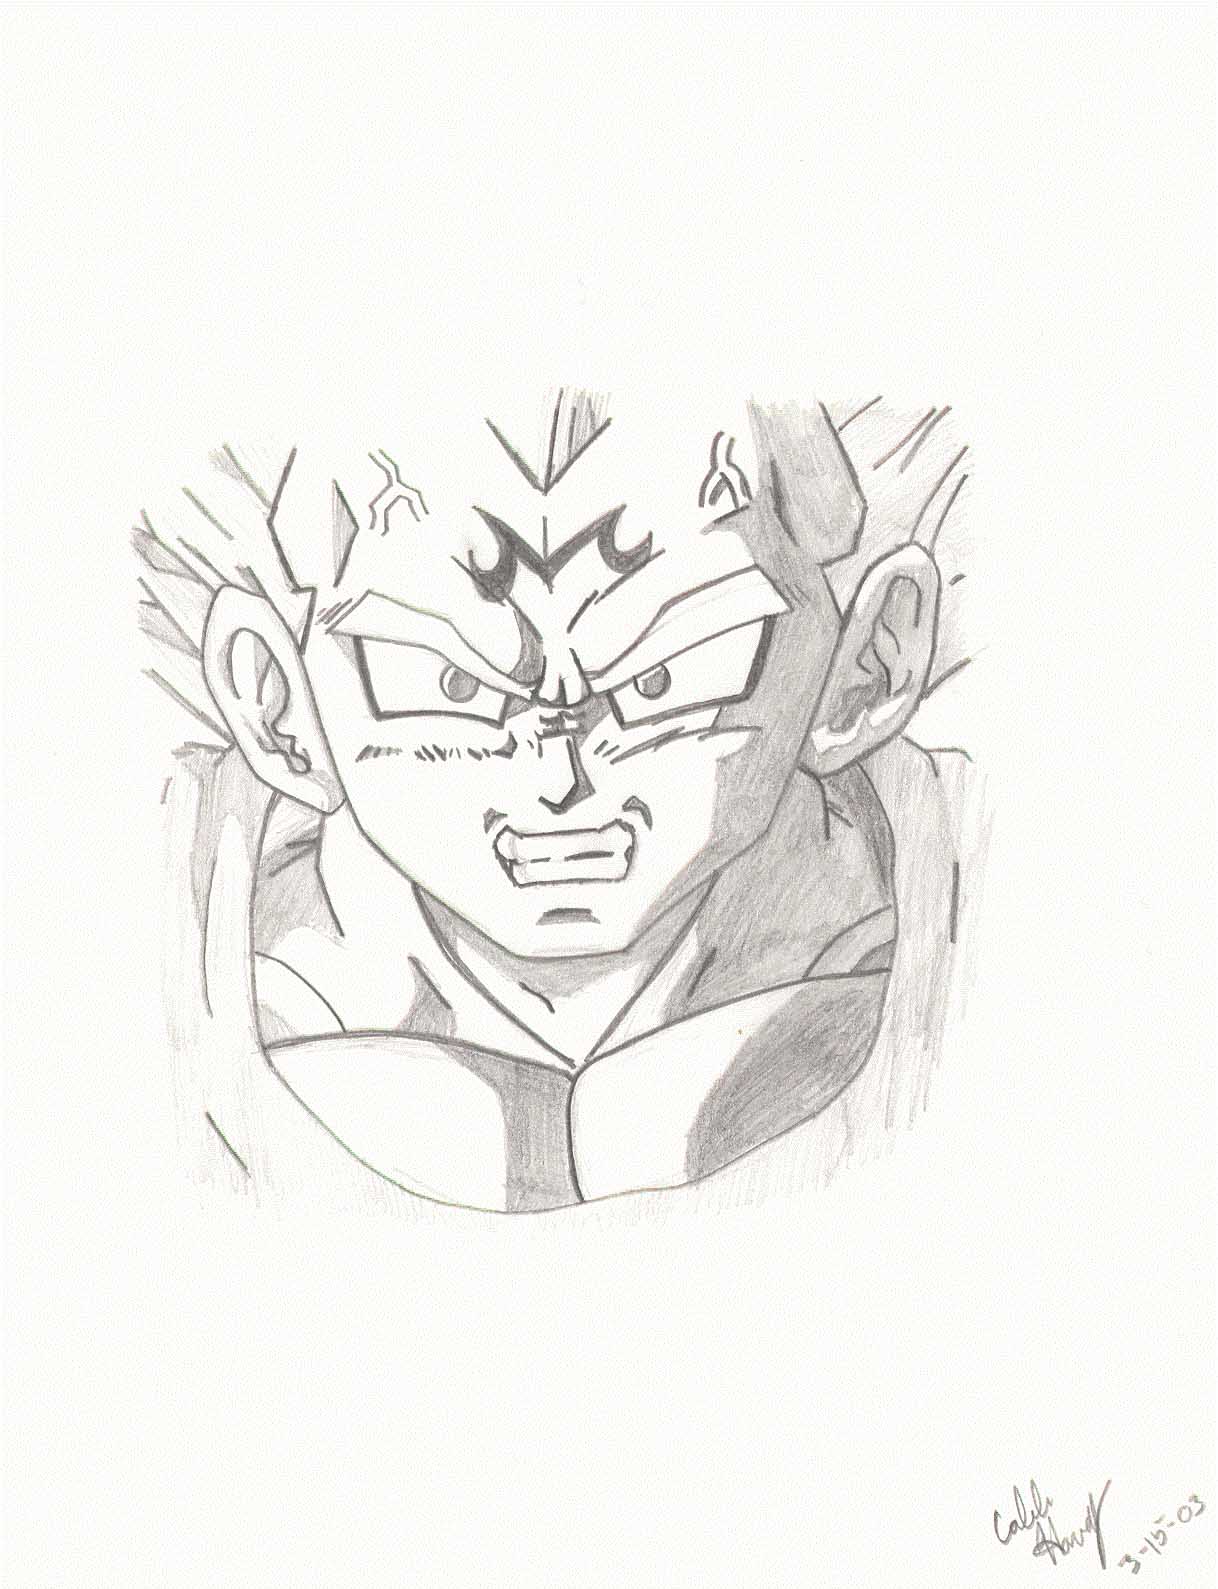 Angry Vegeta by Kaybo_Sasuke